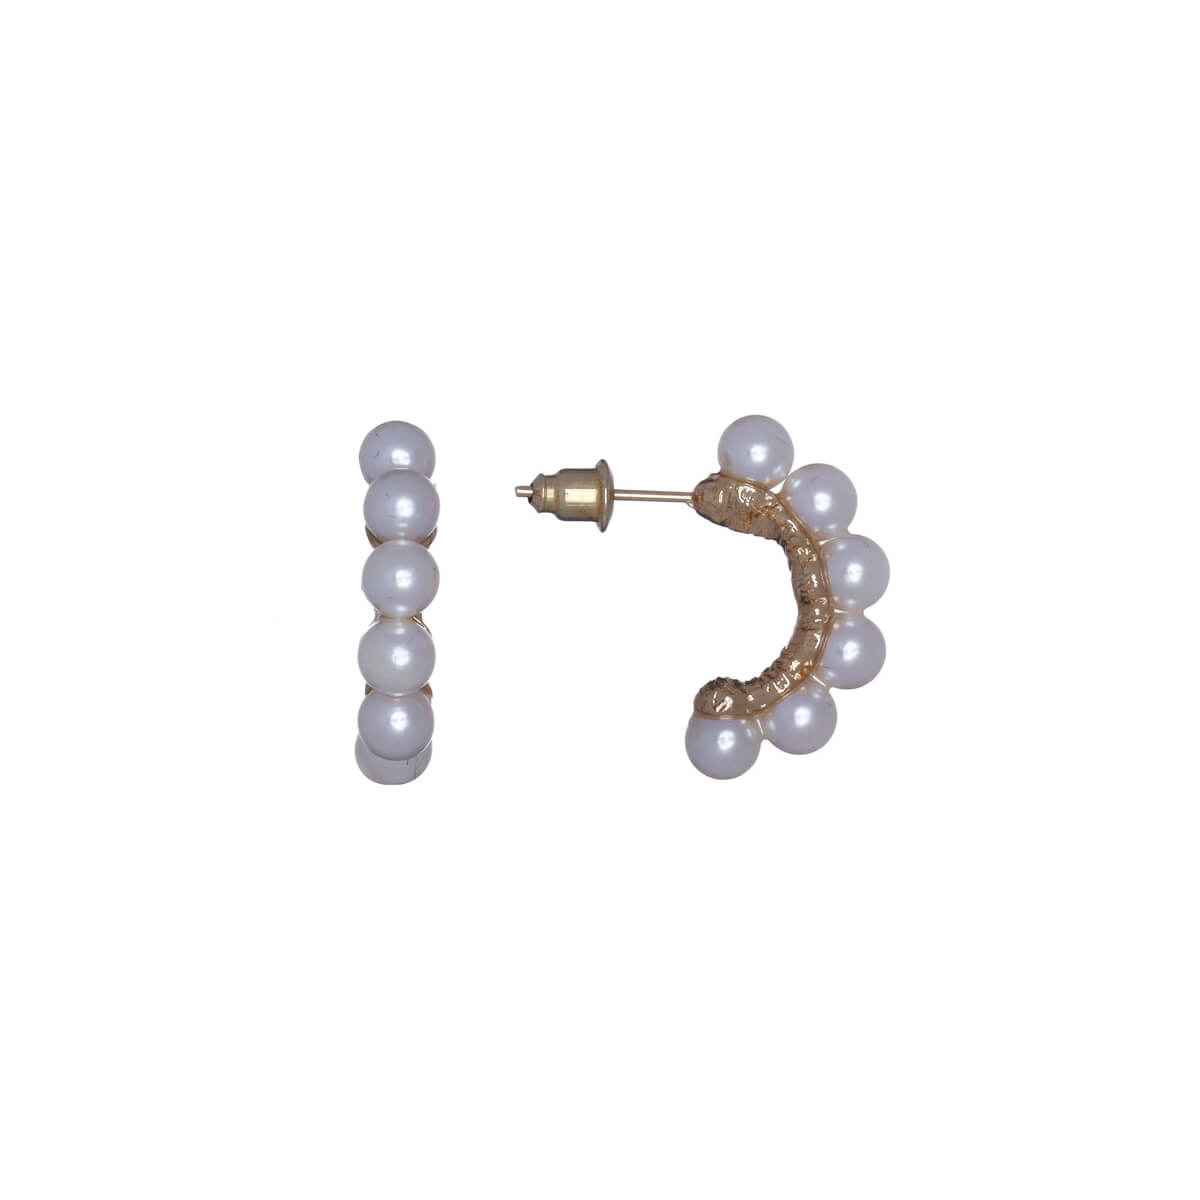 Pearl earrings half a ring